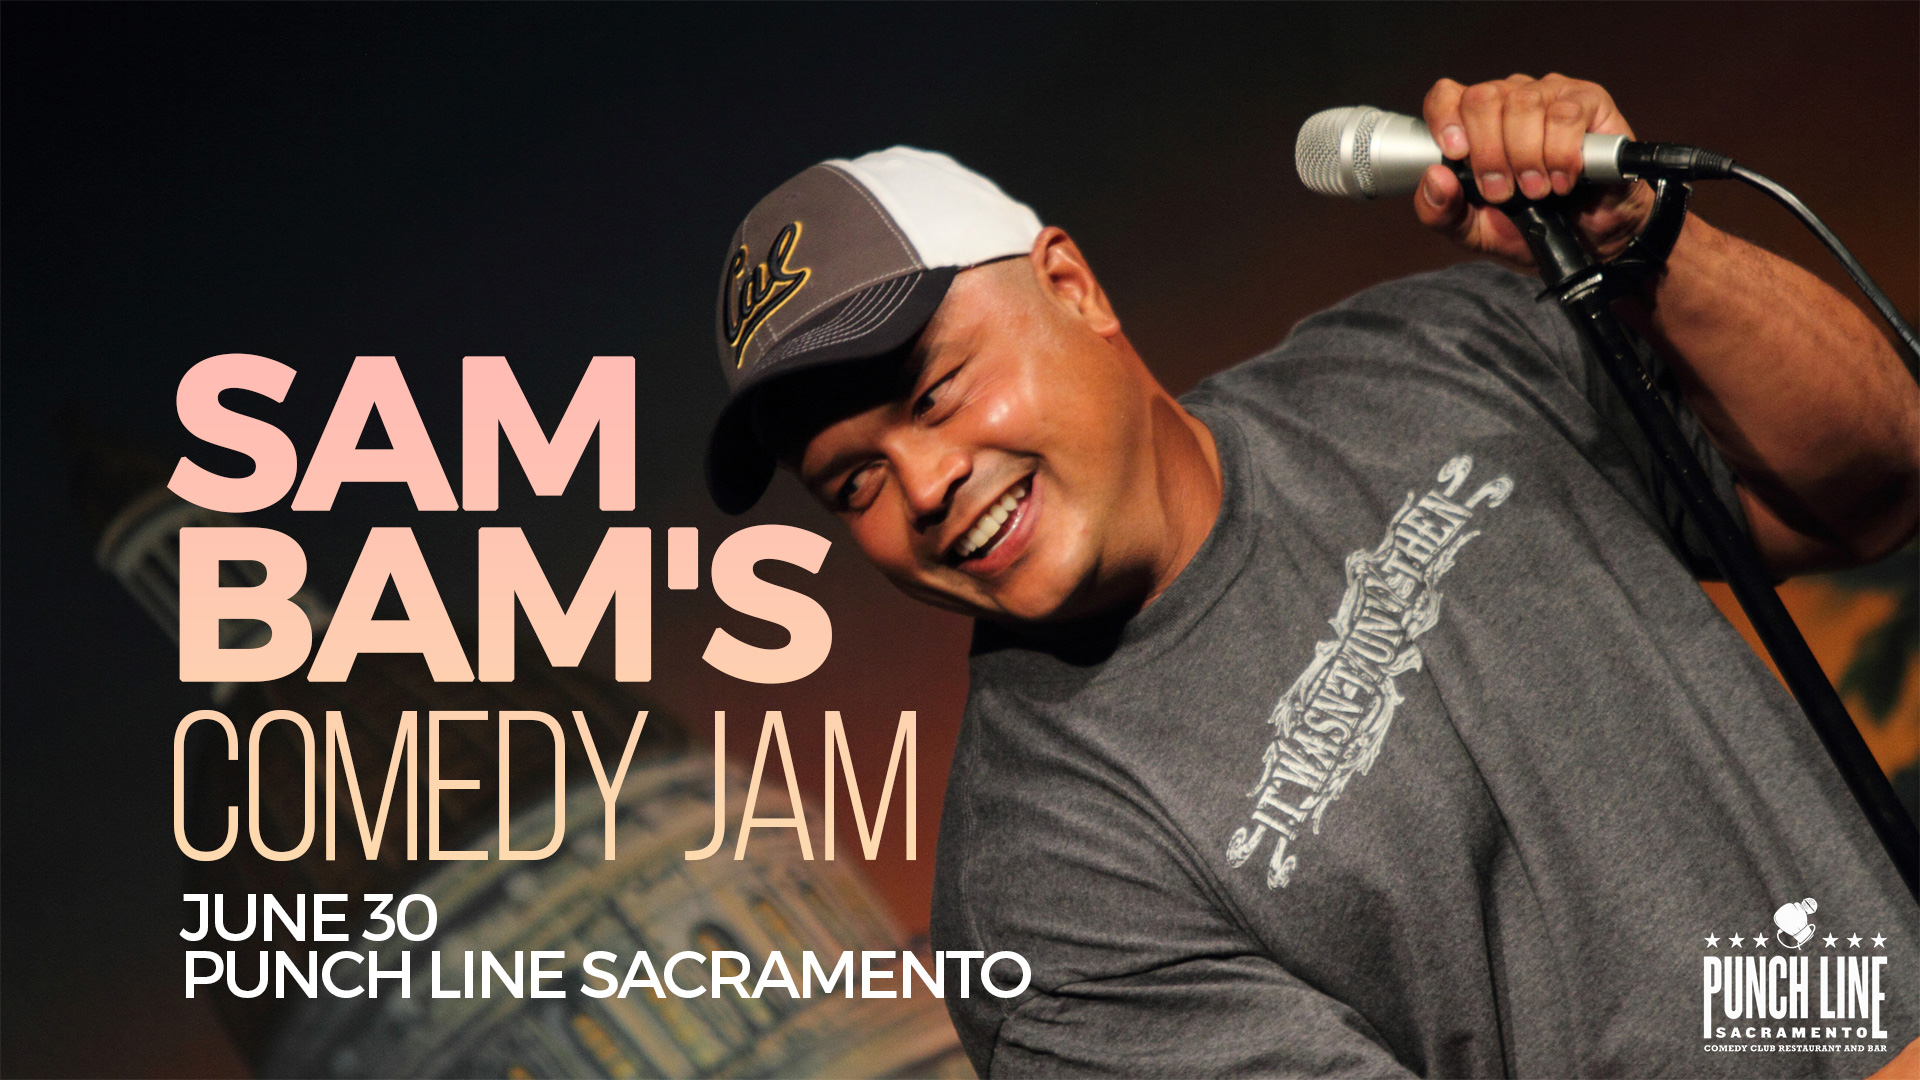 Sam Bam's Comedy Jam